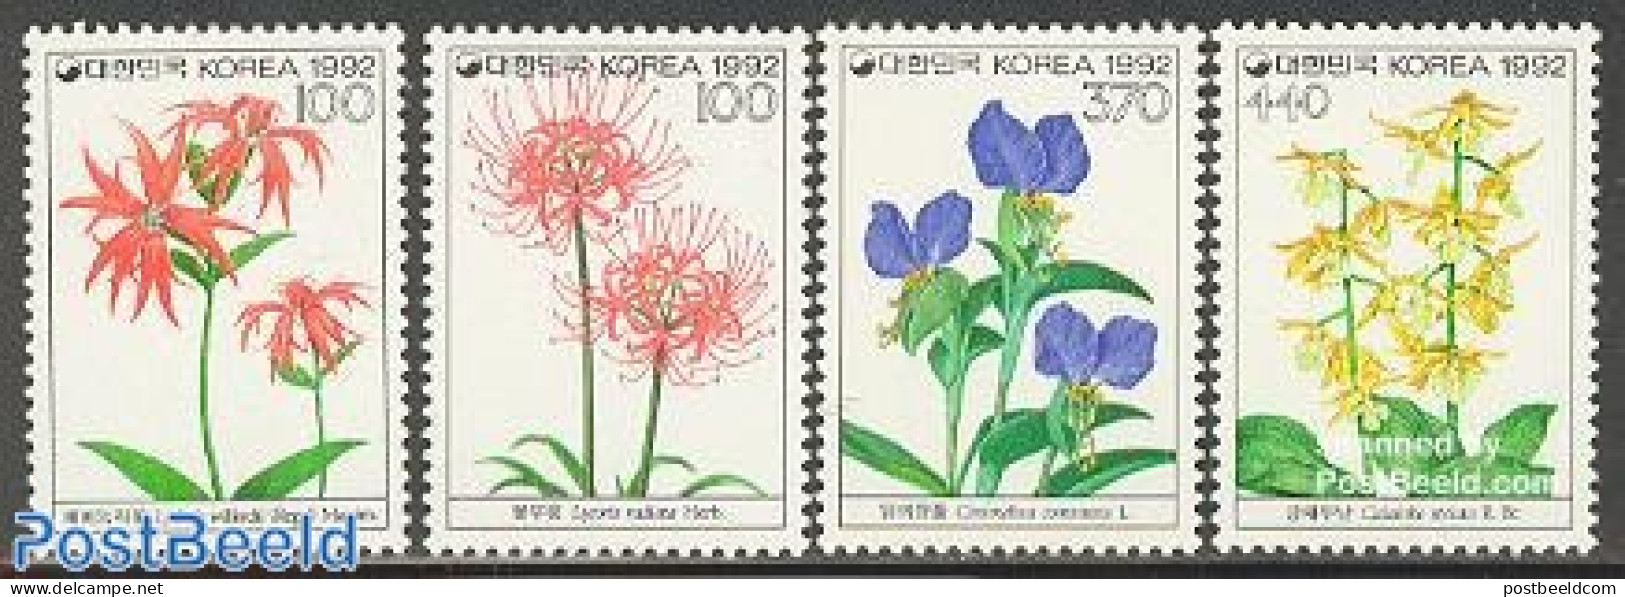 Korea, South 1992 Wild Flowers 4v, Mint NH, Nature - Flowers & Plants - Korea, South